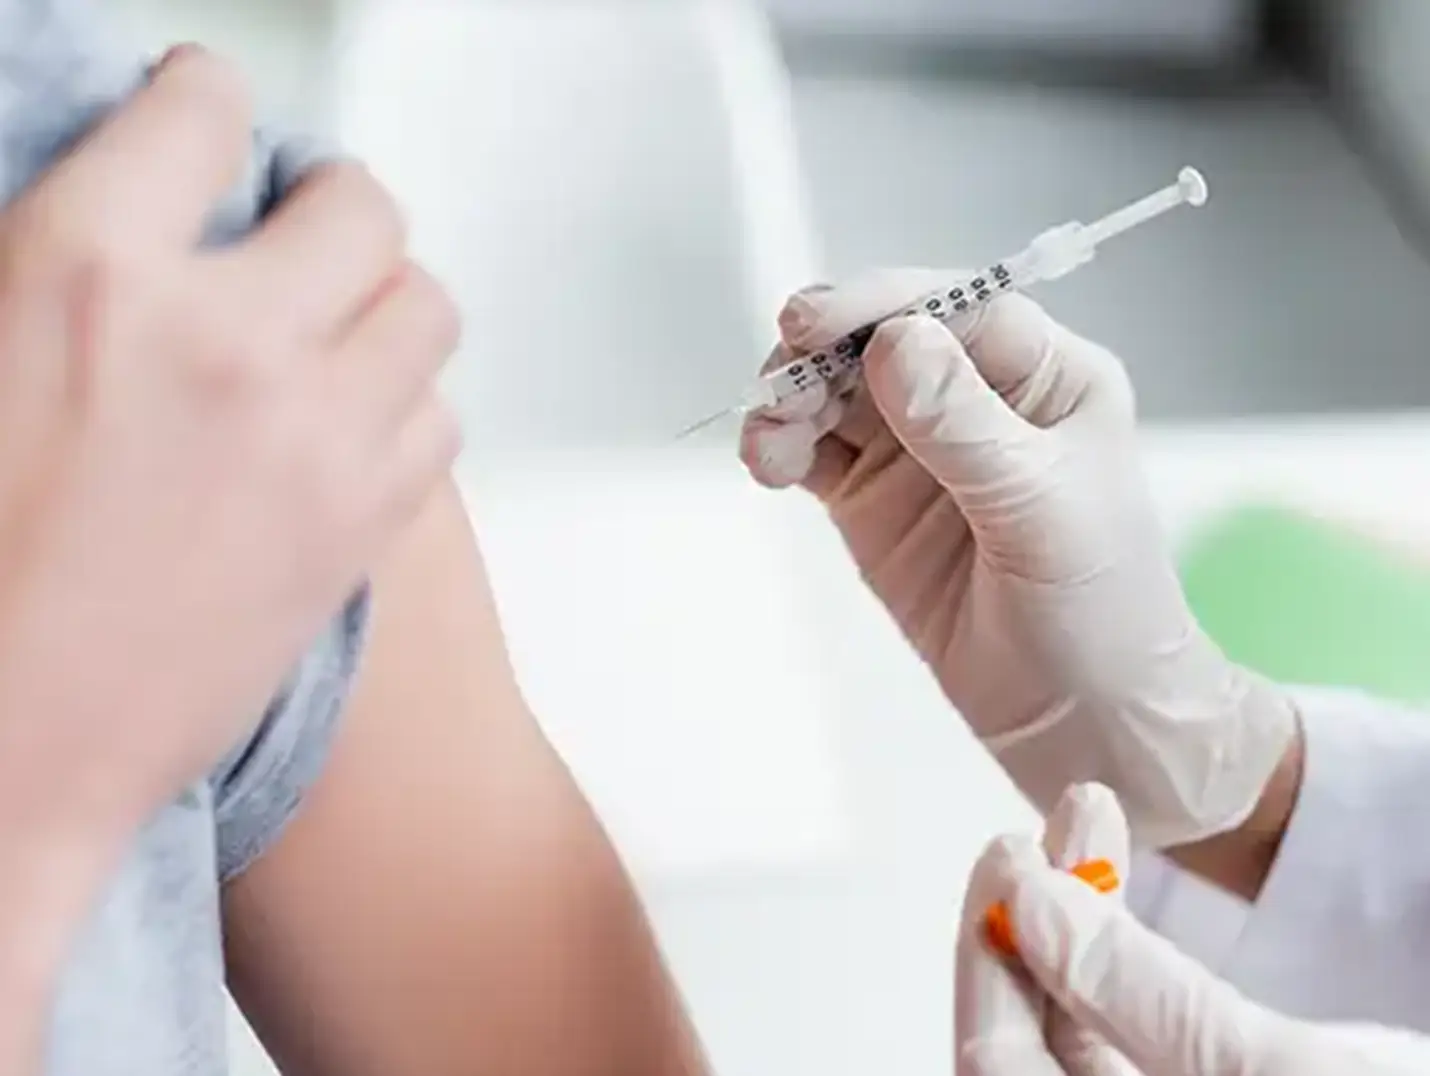  Médico con guantes blancos y jeringa en la mano, aplicando una vacuna en el brazo izquierdo de un paciente con playera gris.